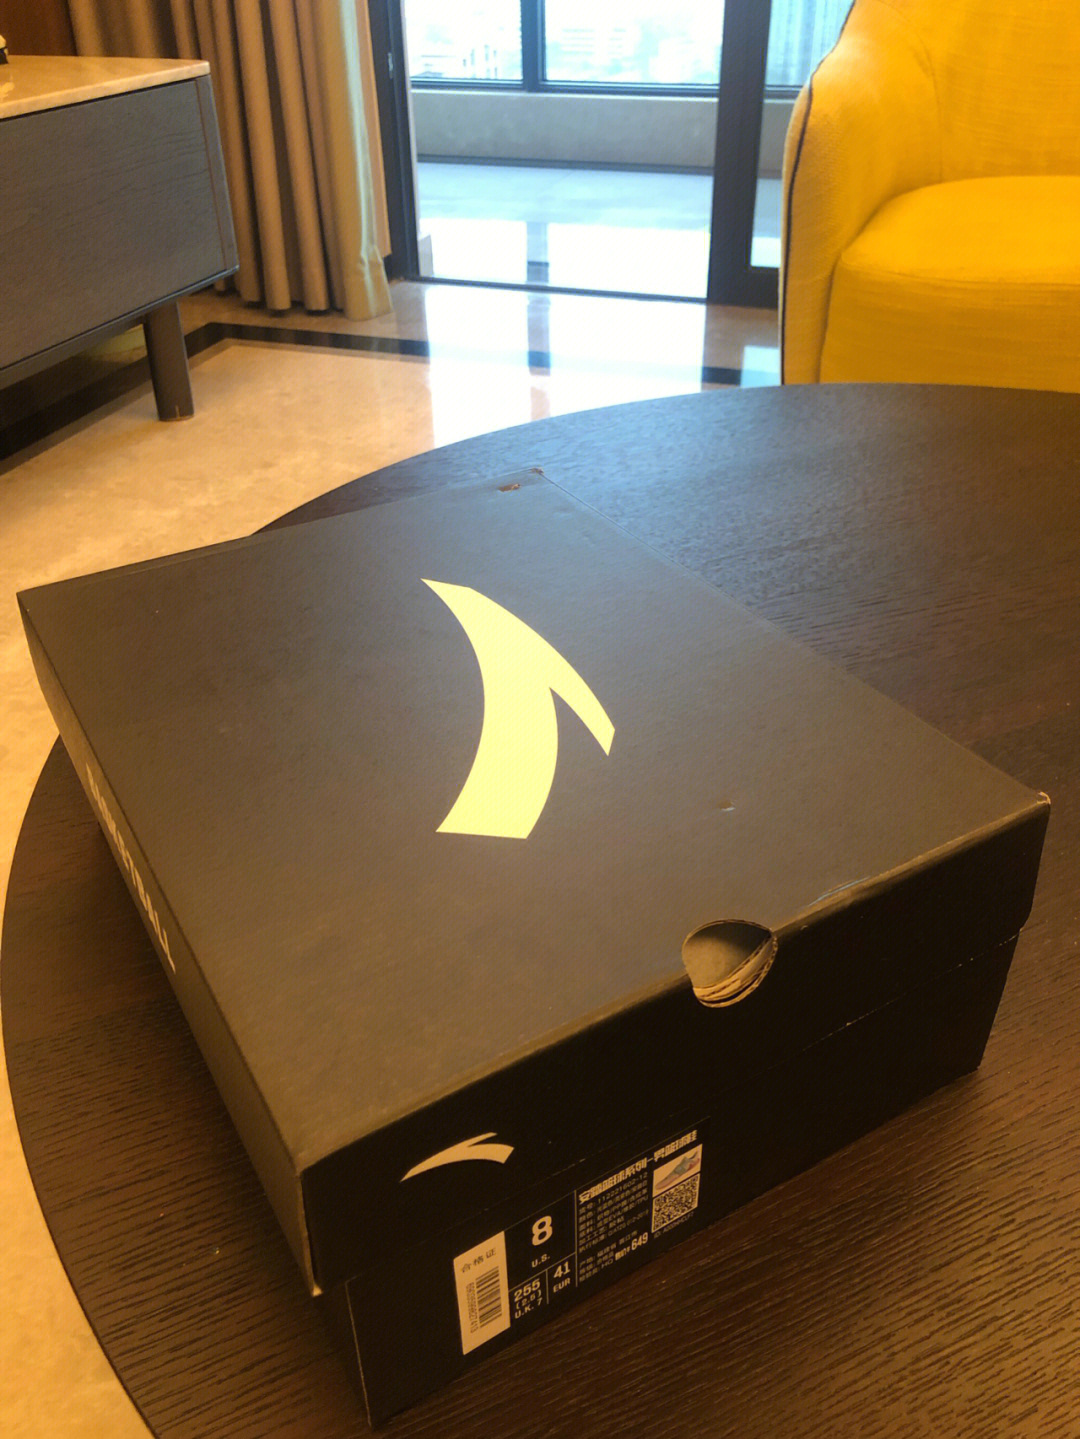 kt5水晶球鞋盒图片